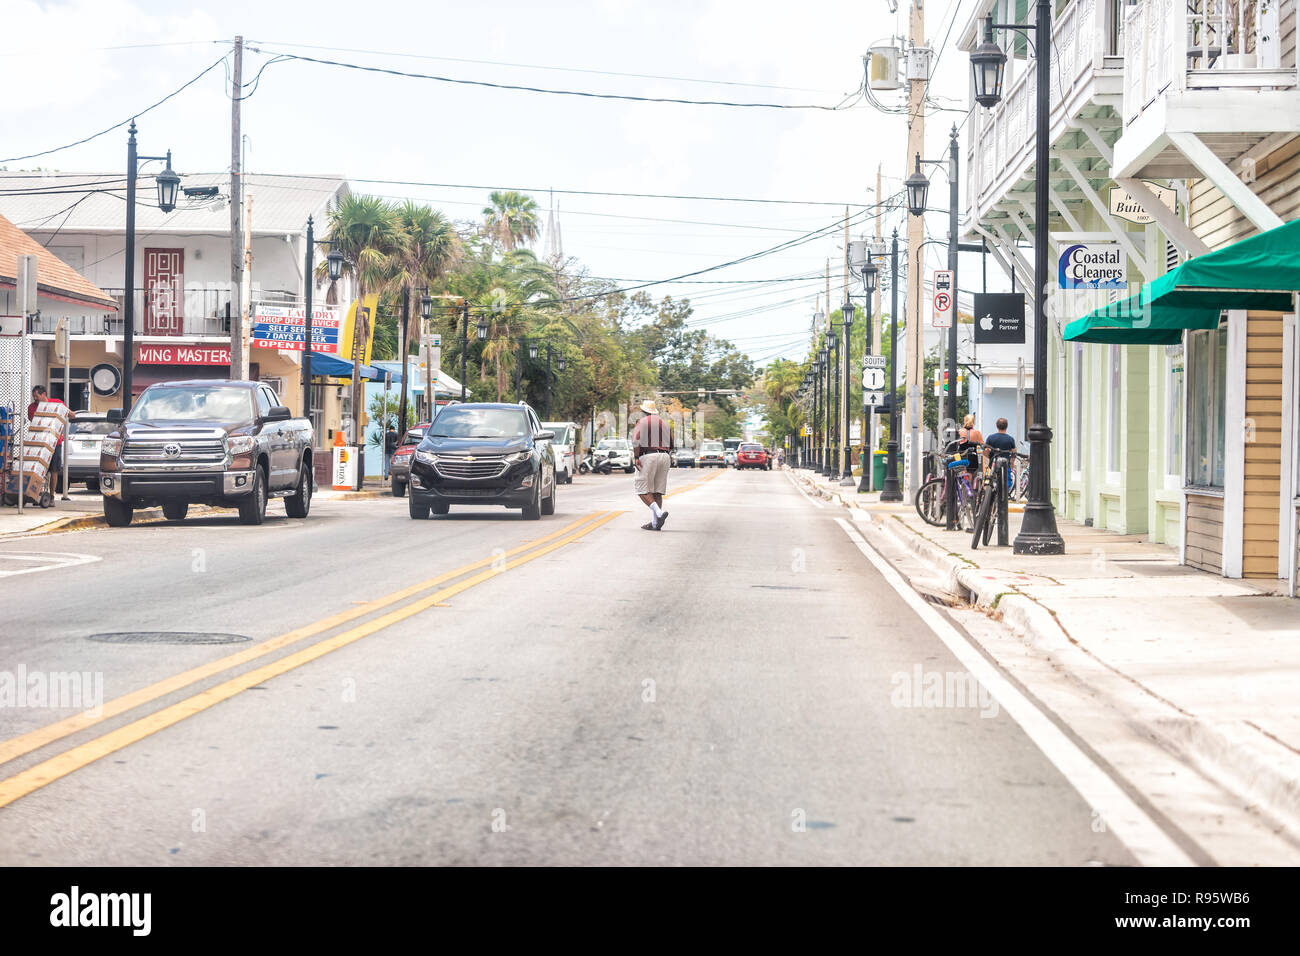 Key West, USA - Mai 1, 2018: Truman Avenue in Florida keys Stadt, städtische Blick auf Straße, Straße, Autos mit afrikanischen amerikanischen Mann überfahrt, jaywalking Stockfoto